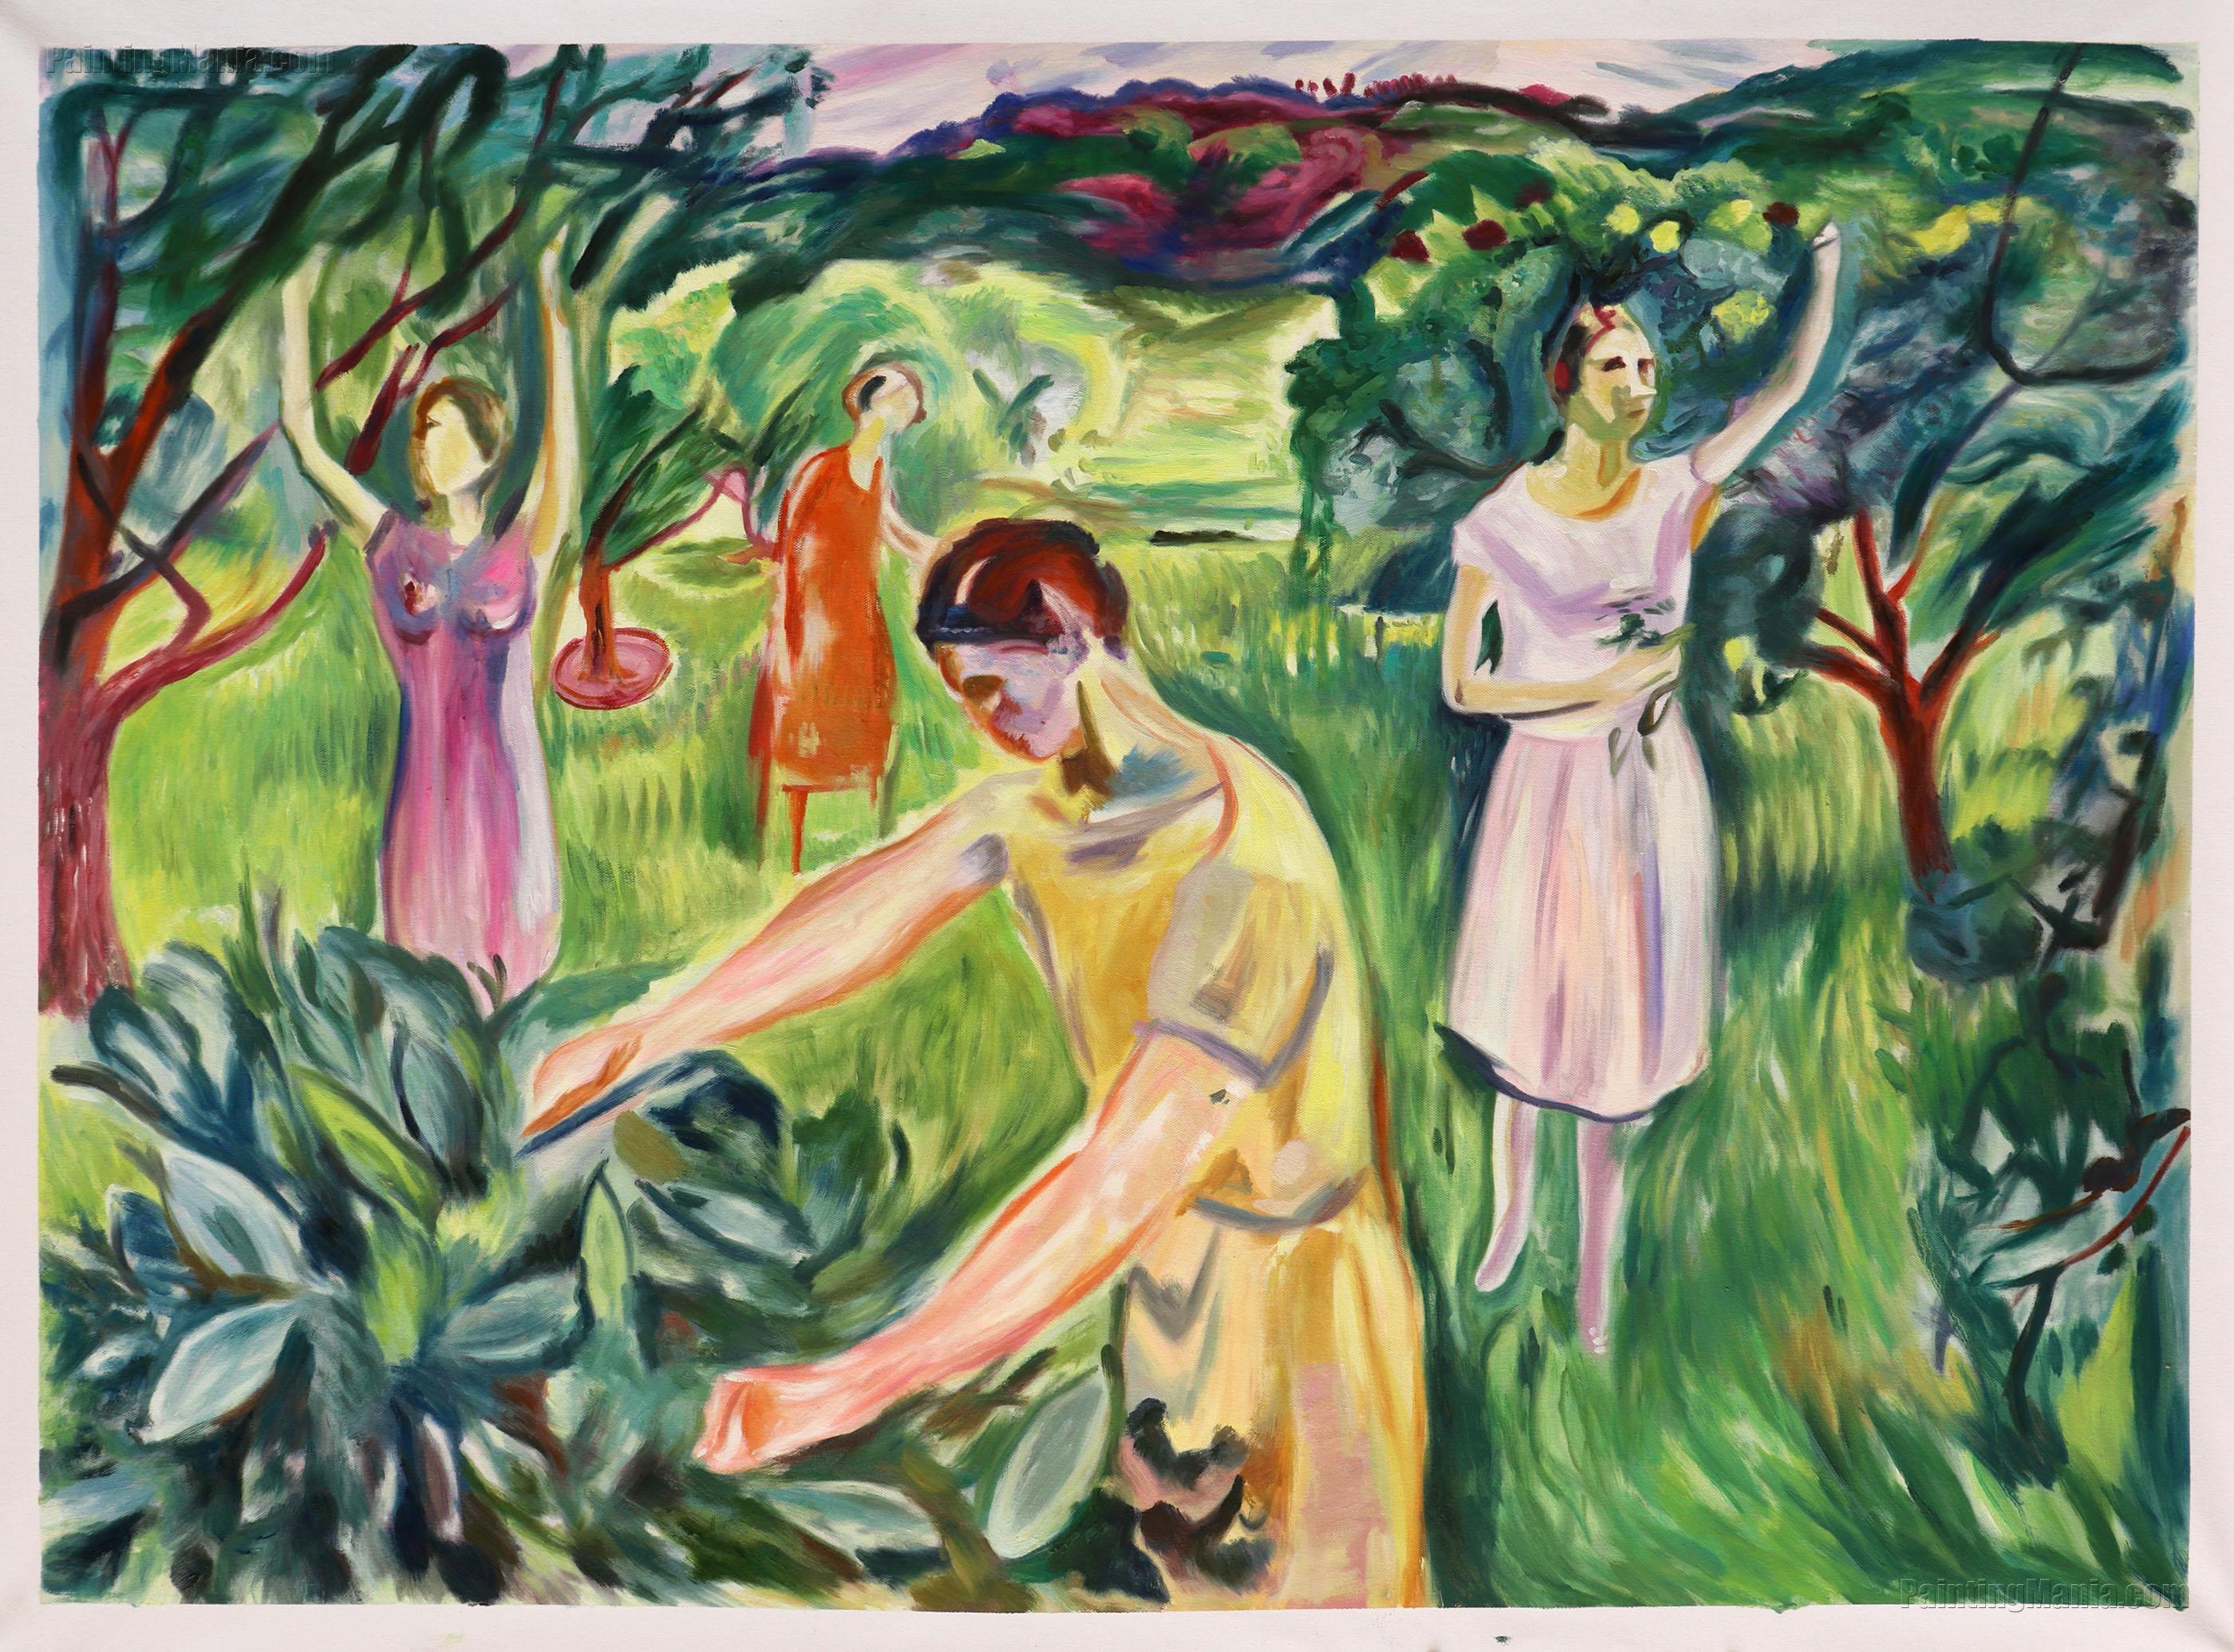 Four Women in the Garden